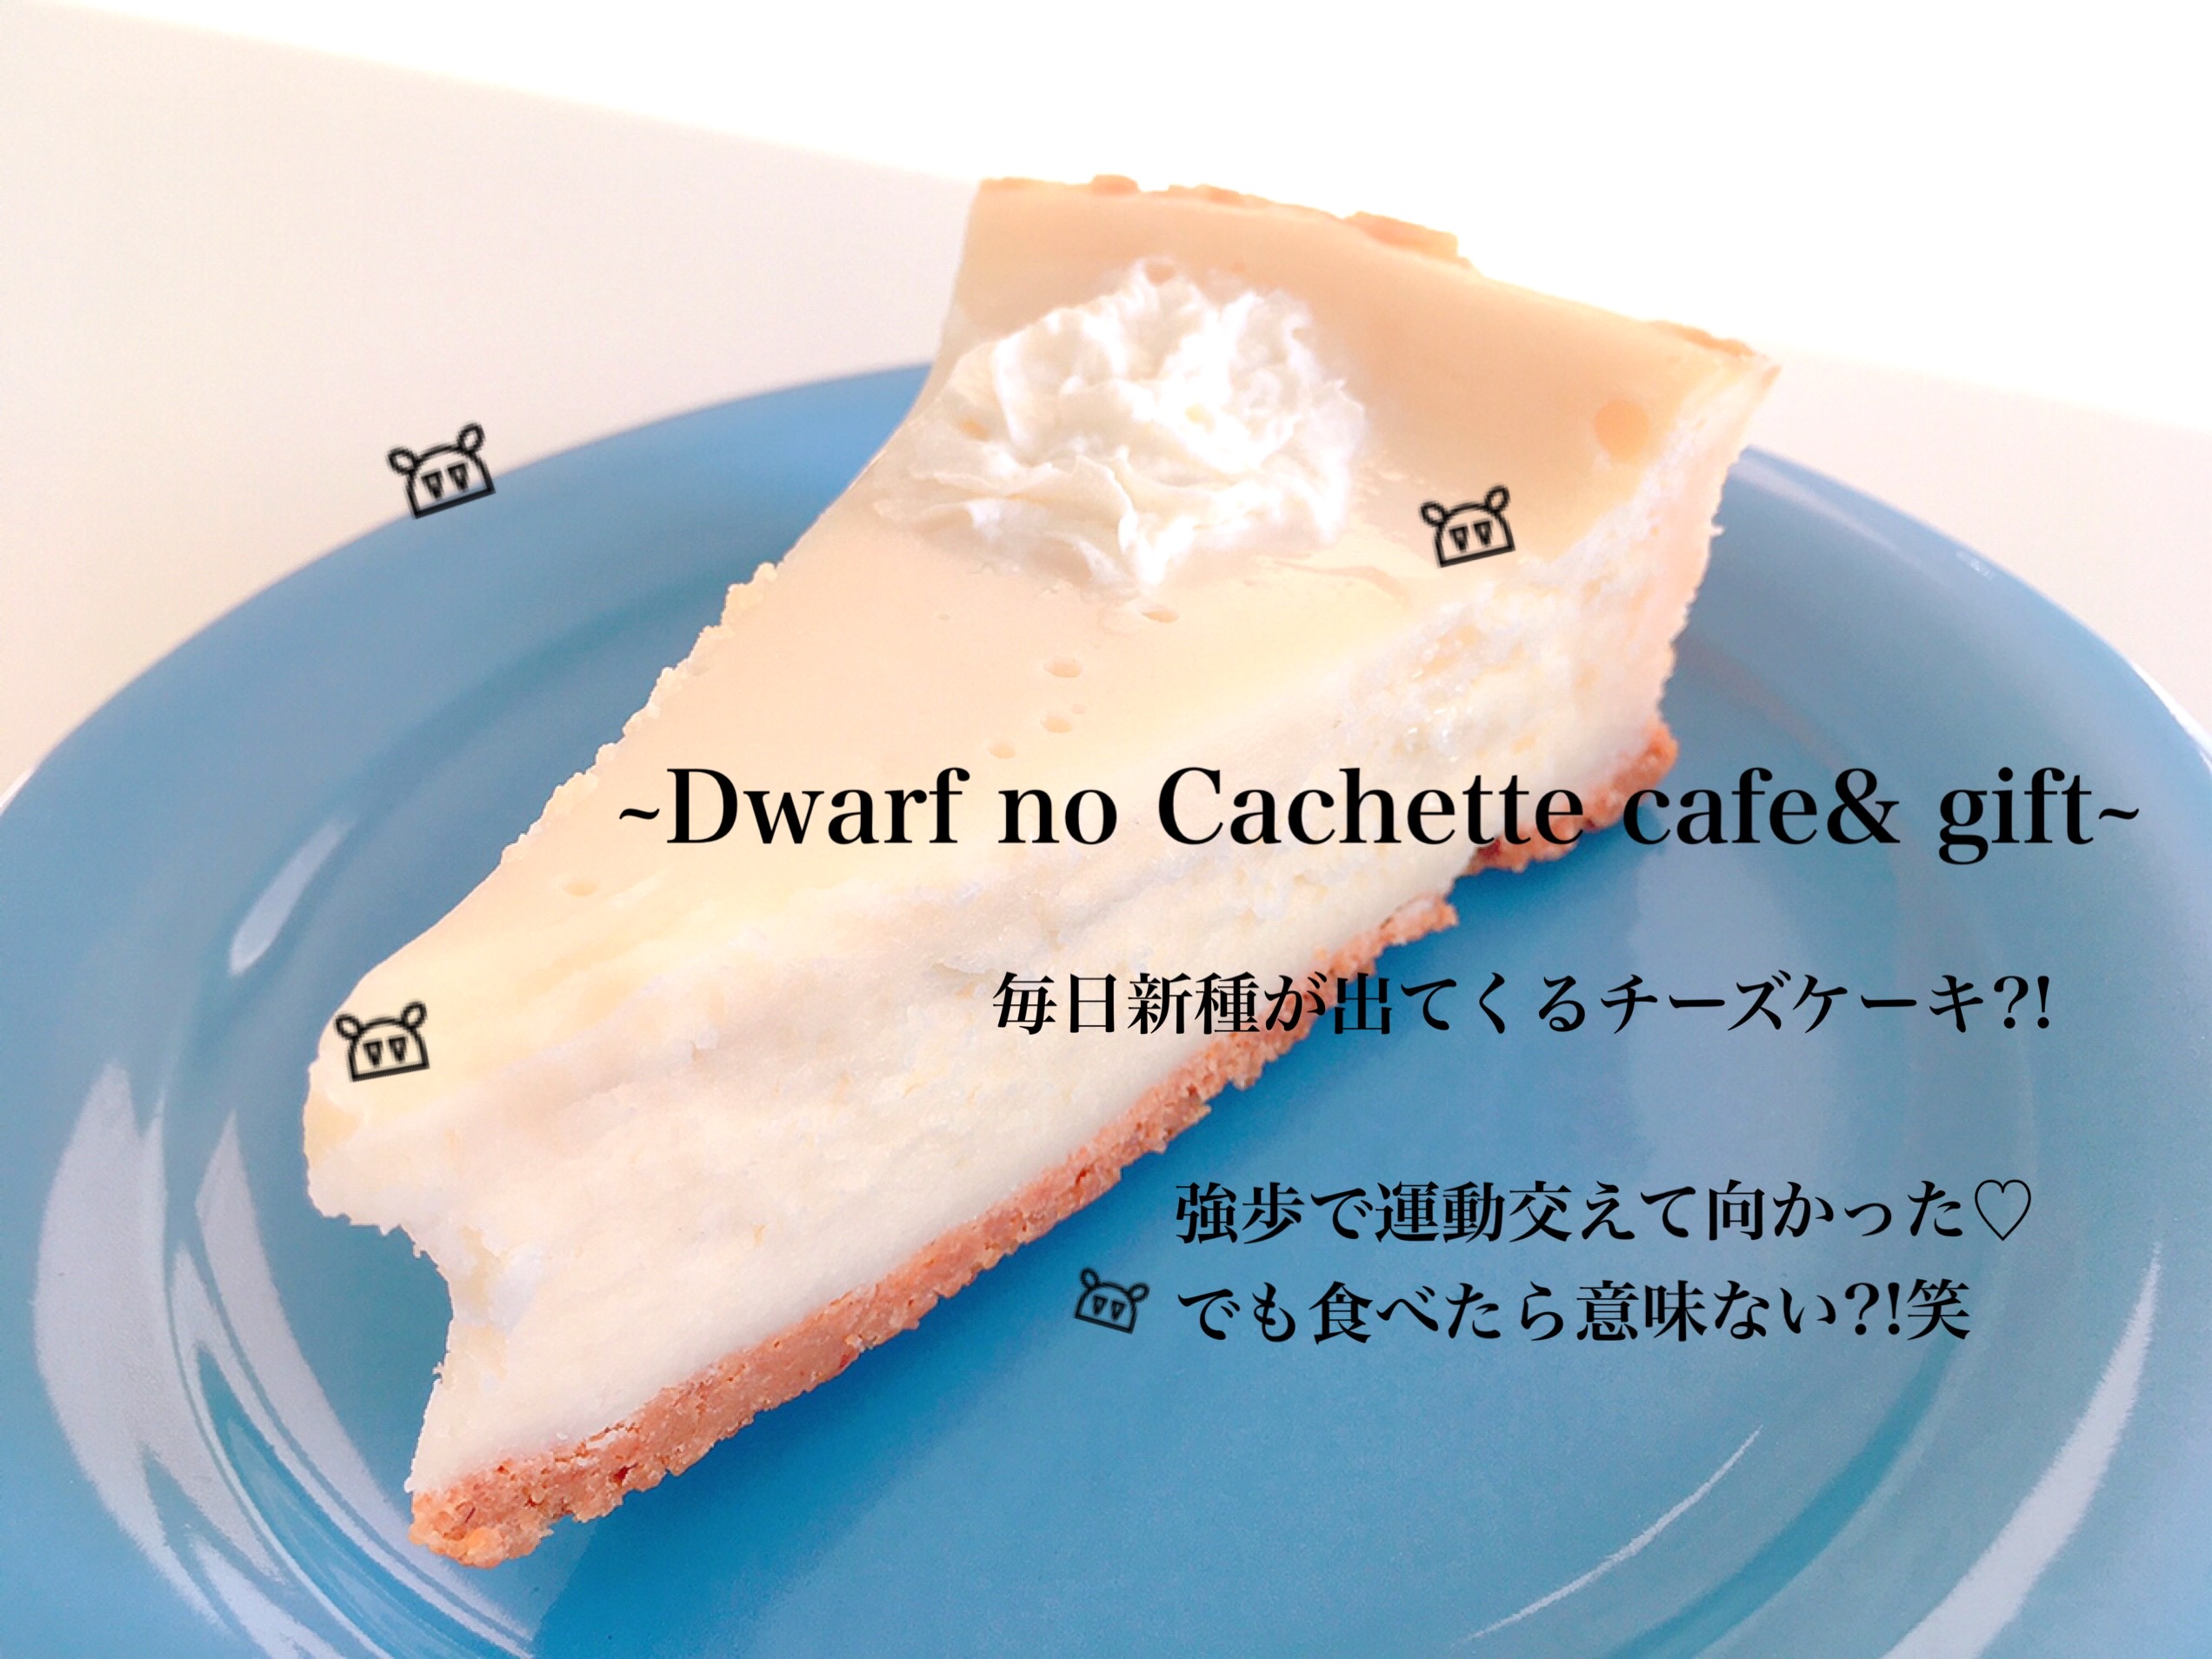 チーズケーキの仙人のところへ 笑 Dwarf No Cachette Cafe Gift カナダ生活 ウィニペグ Tupaiを夢見るmaipocoブログ